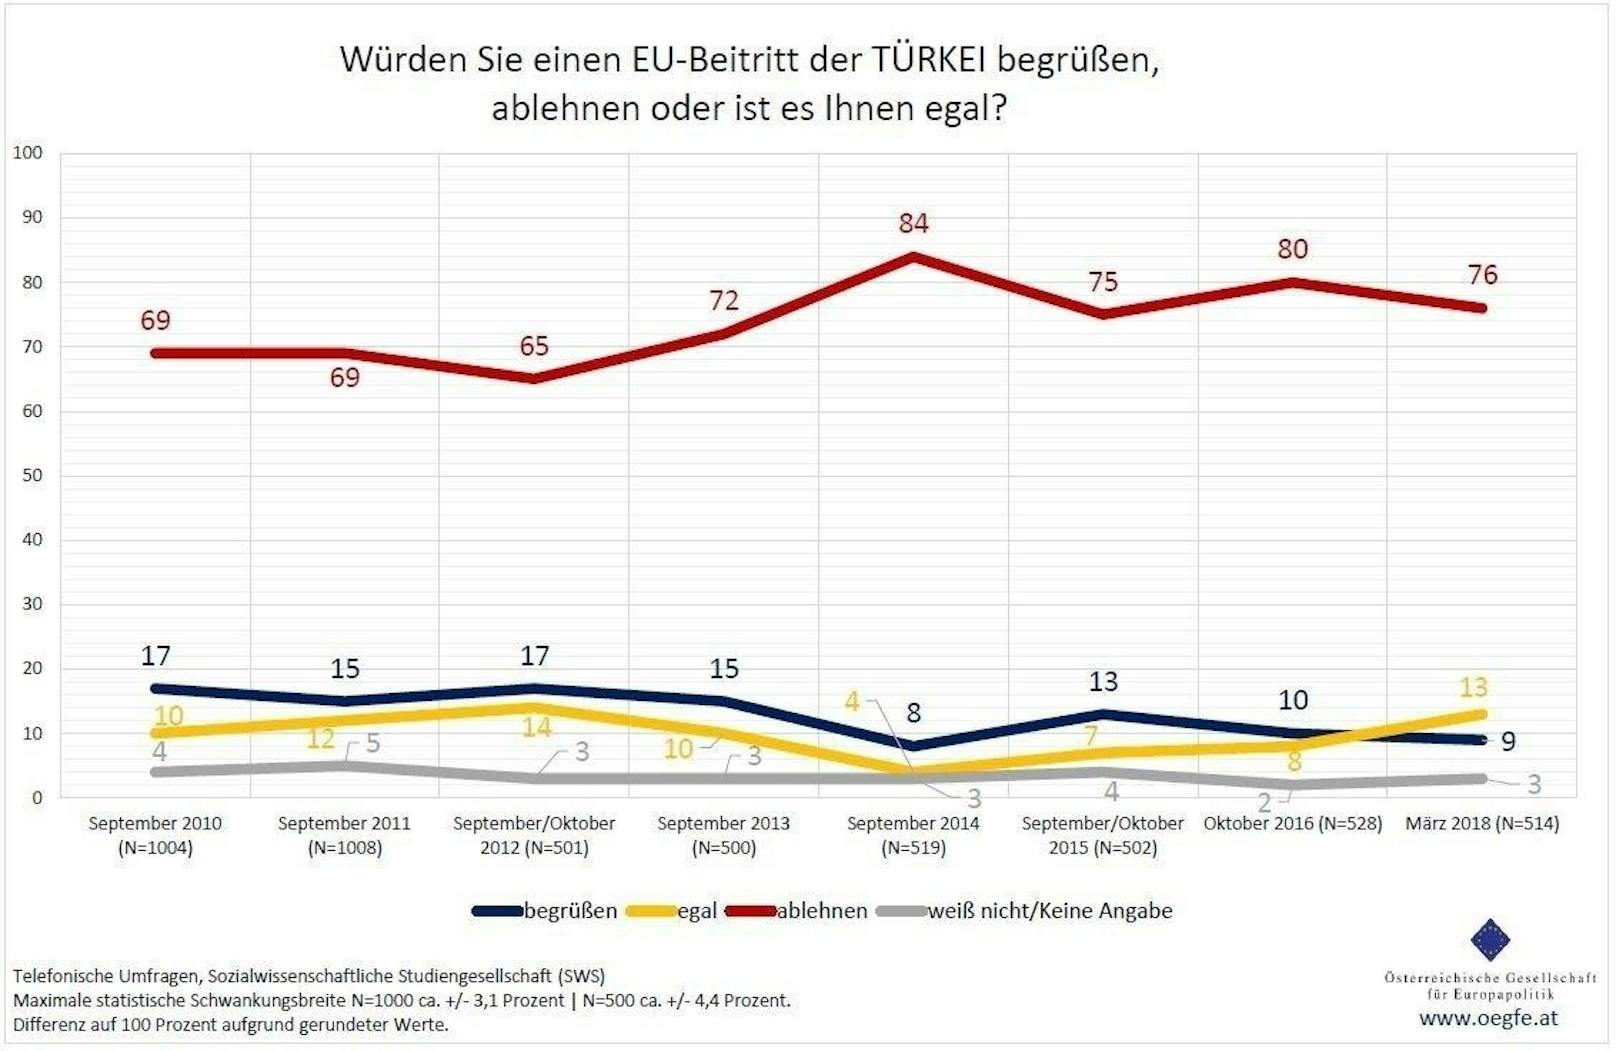 Dagegen könnte sich gegenwärtig nur knapp eine/r von zehn Befragten (9 Prozent) die <b>Türkei</b> als EU-Mitglied vorstellen. Drei Viertel der Befragten lehnen einen EU-Beitritt der Türkei jedoch ab (76 Prozent), während sich 13 Prozent indifferent zeigen.